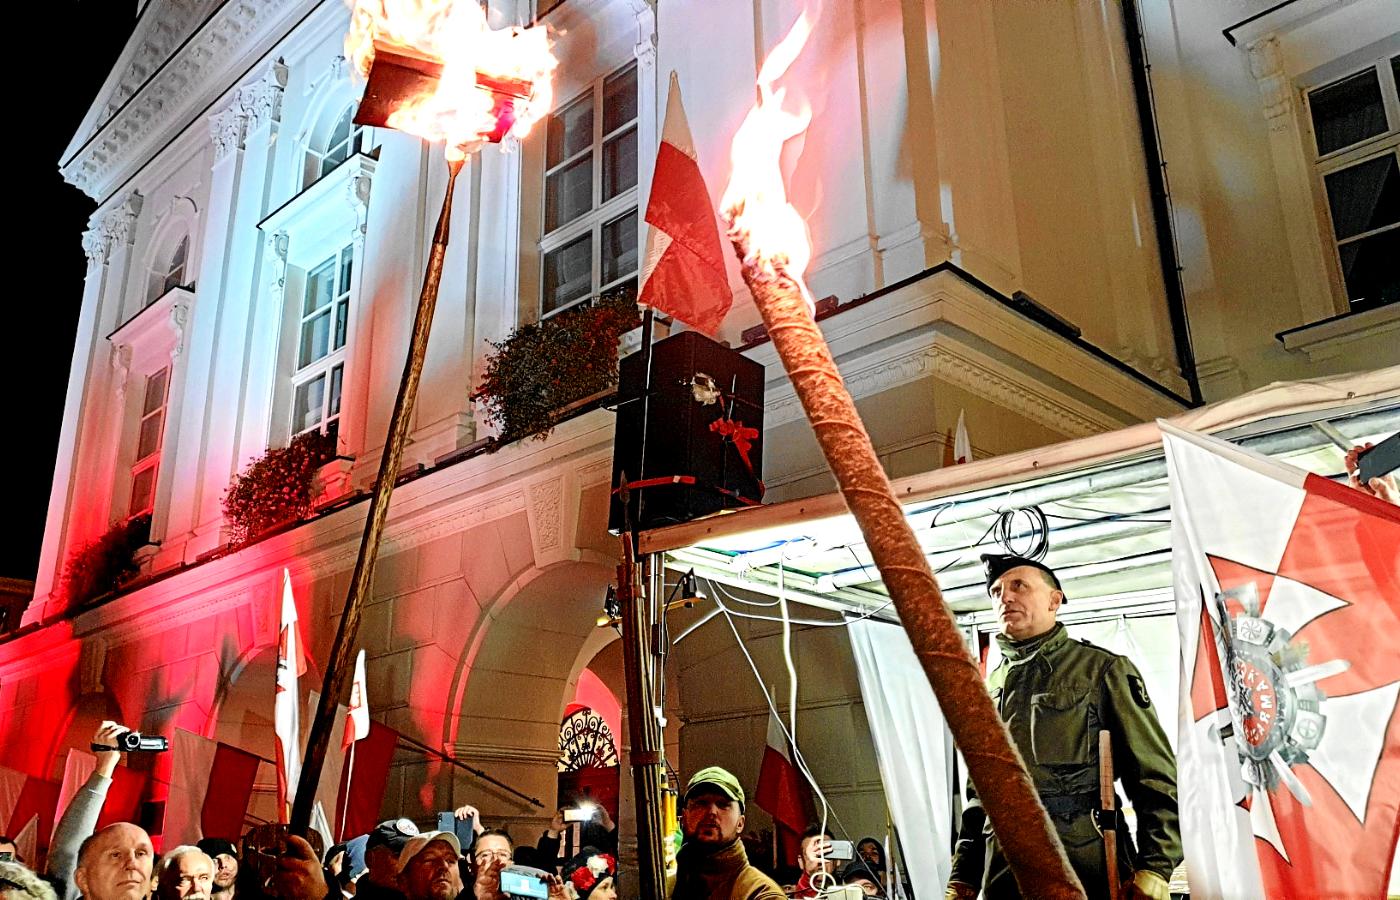 Palenie statutu kaliskiego podczas demonstracji skrajnej prawicy. Kalisz, 11 listopada 2021 r.